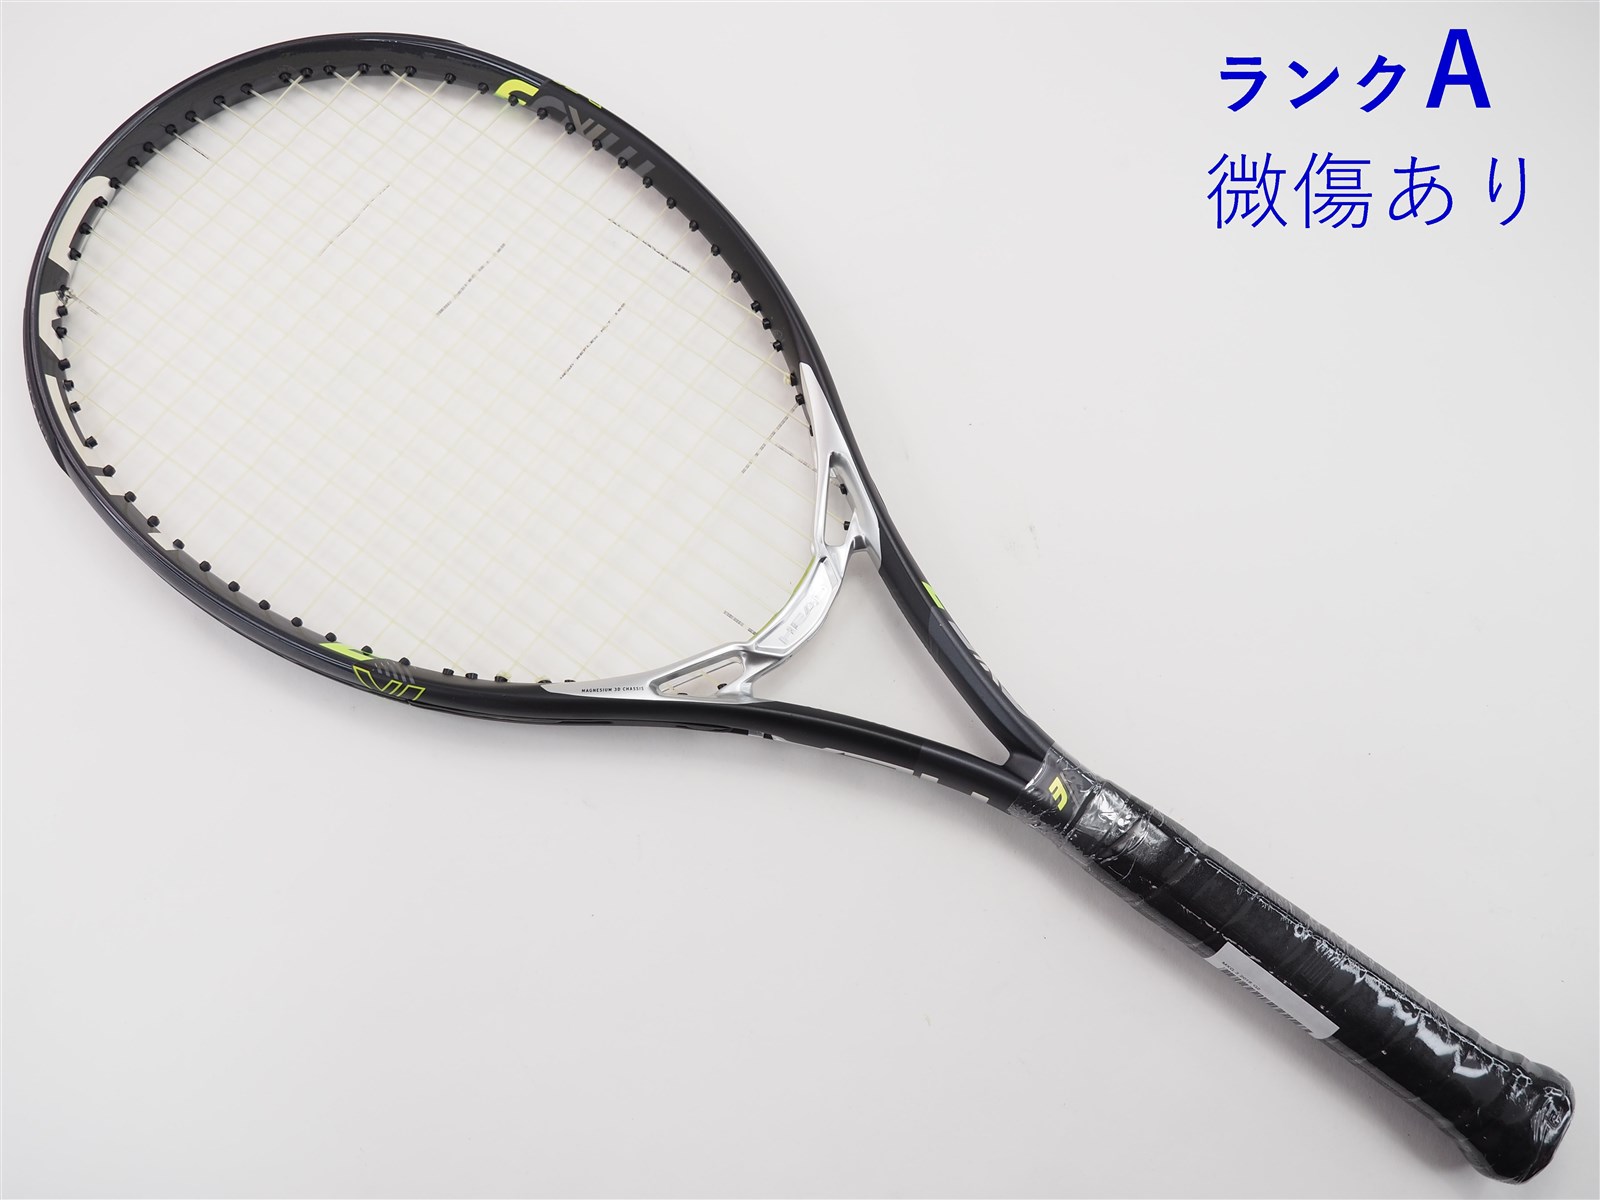 テニスラケット ヘッド エムエックスジー 3 2018年モデル【DEMO】 (G2